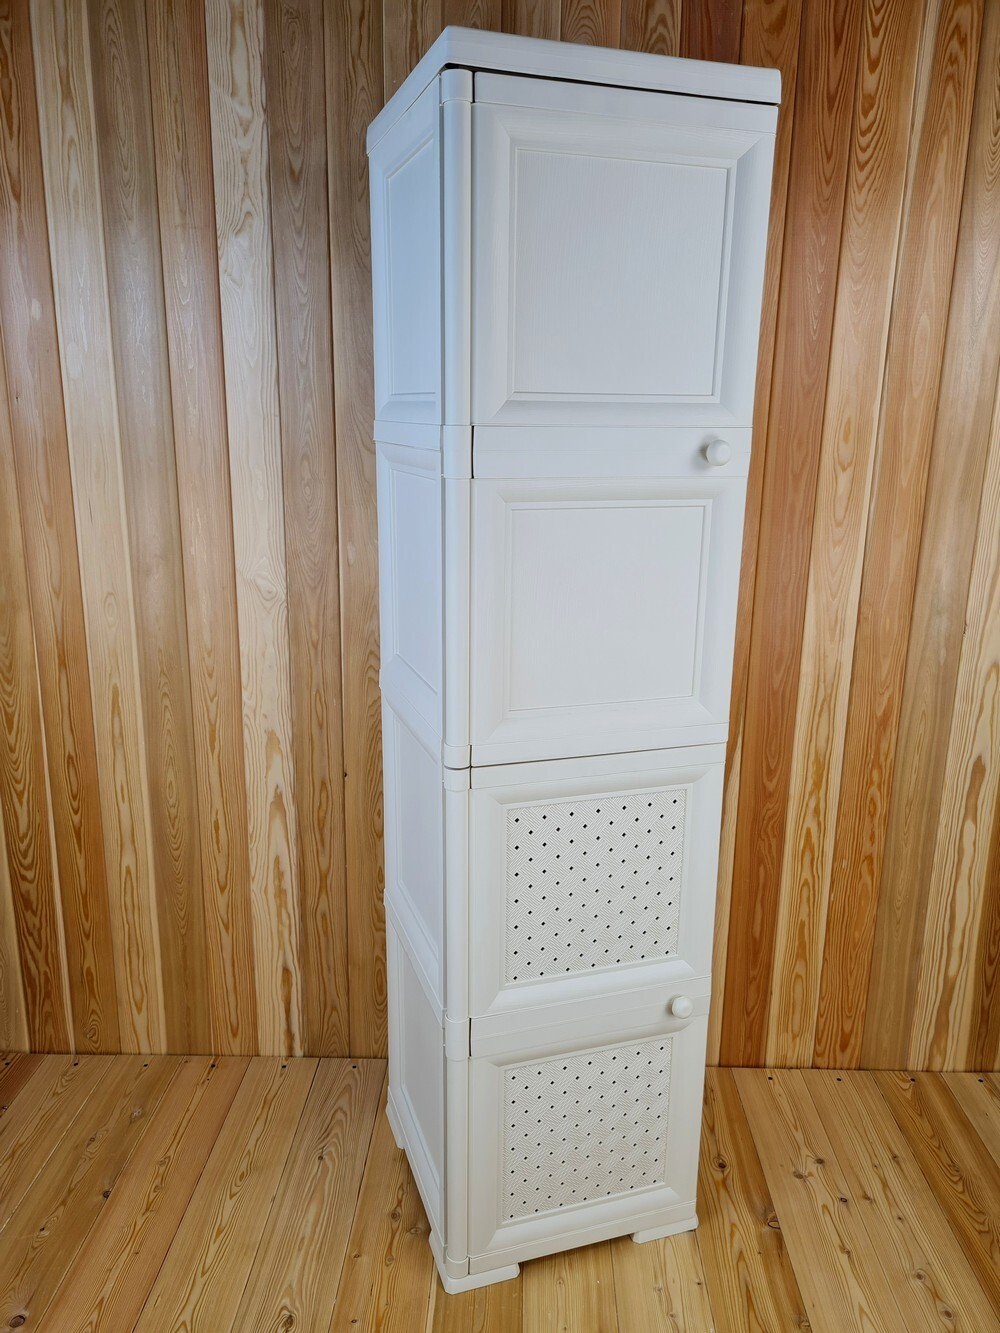 Шкаф высокий, с усиленными рёбрами жёсткости "УЮТ", 40,5х42х161,5 h, 2 дверцы. Цвет: Бежевый (Слоновая кость). Арт: Э-046-Б